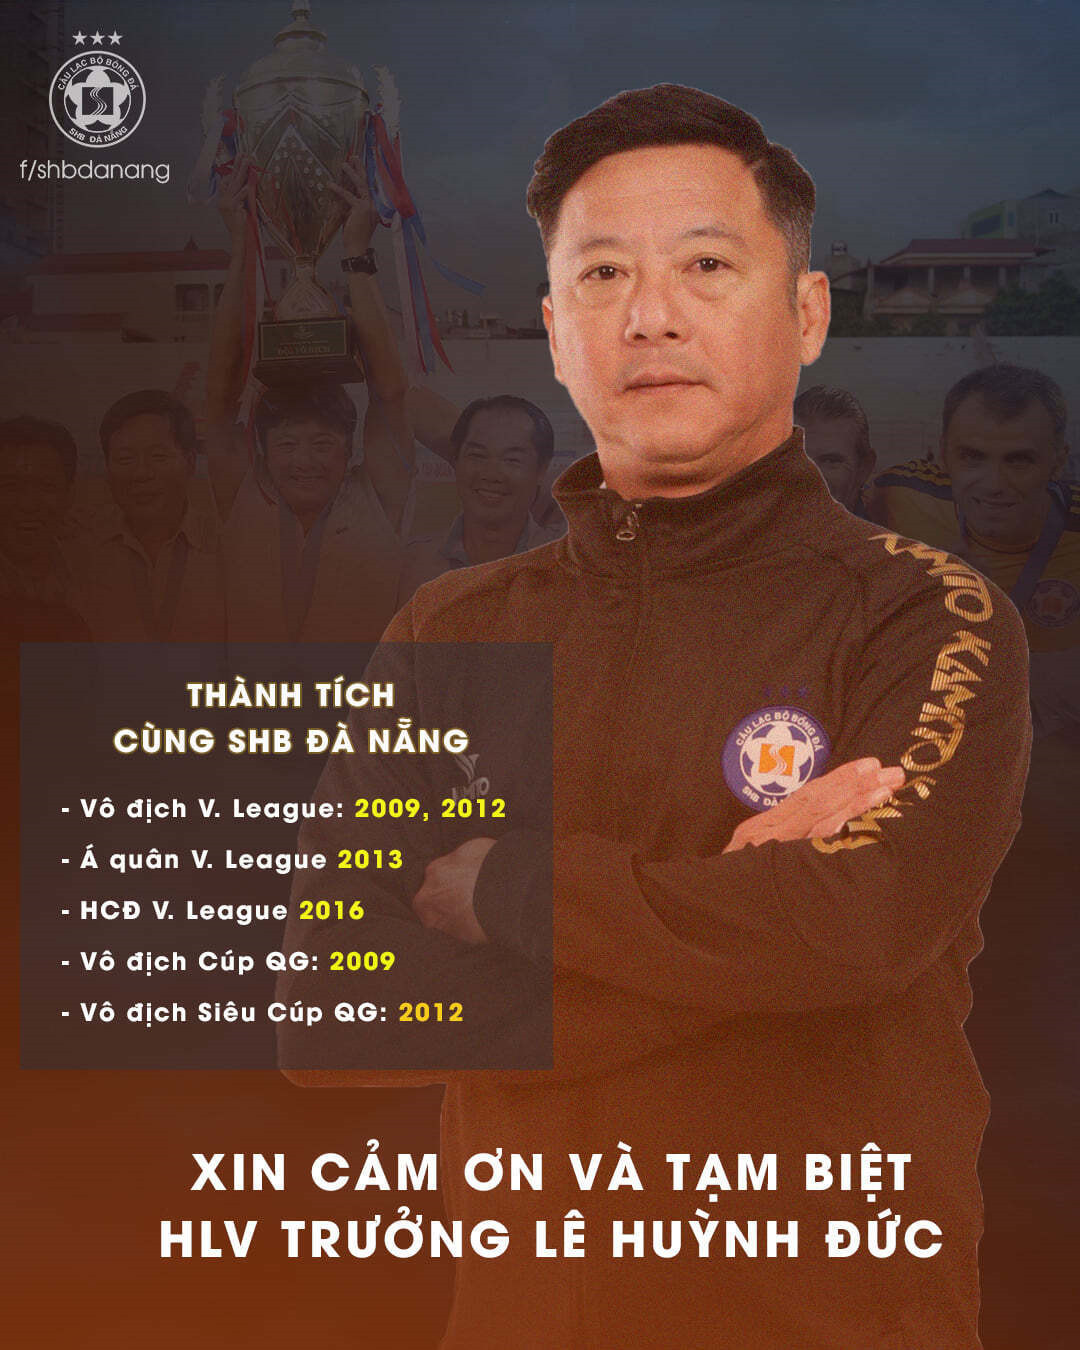 HLV Phan Thanh Hùng dẫn dắt SHB Đà Nẵng thay Lê Huỳnh Đức - 1